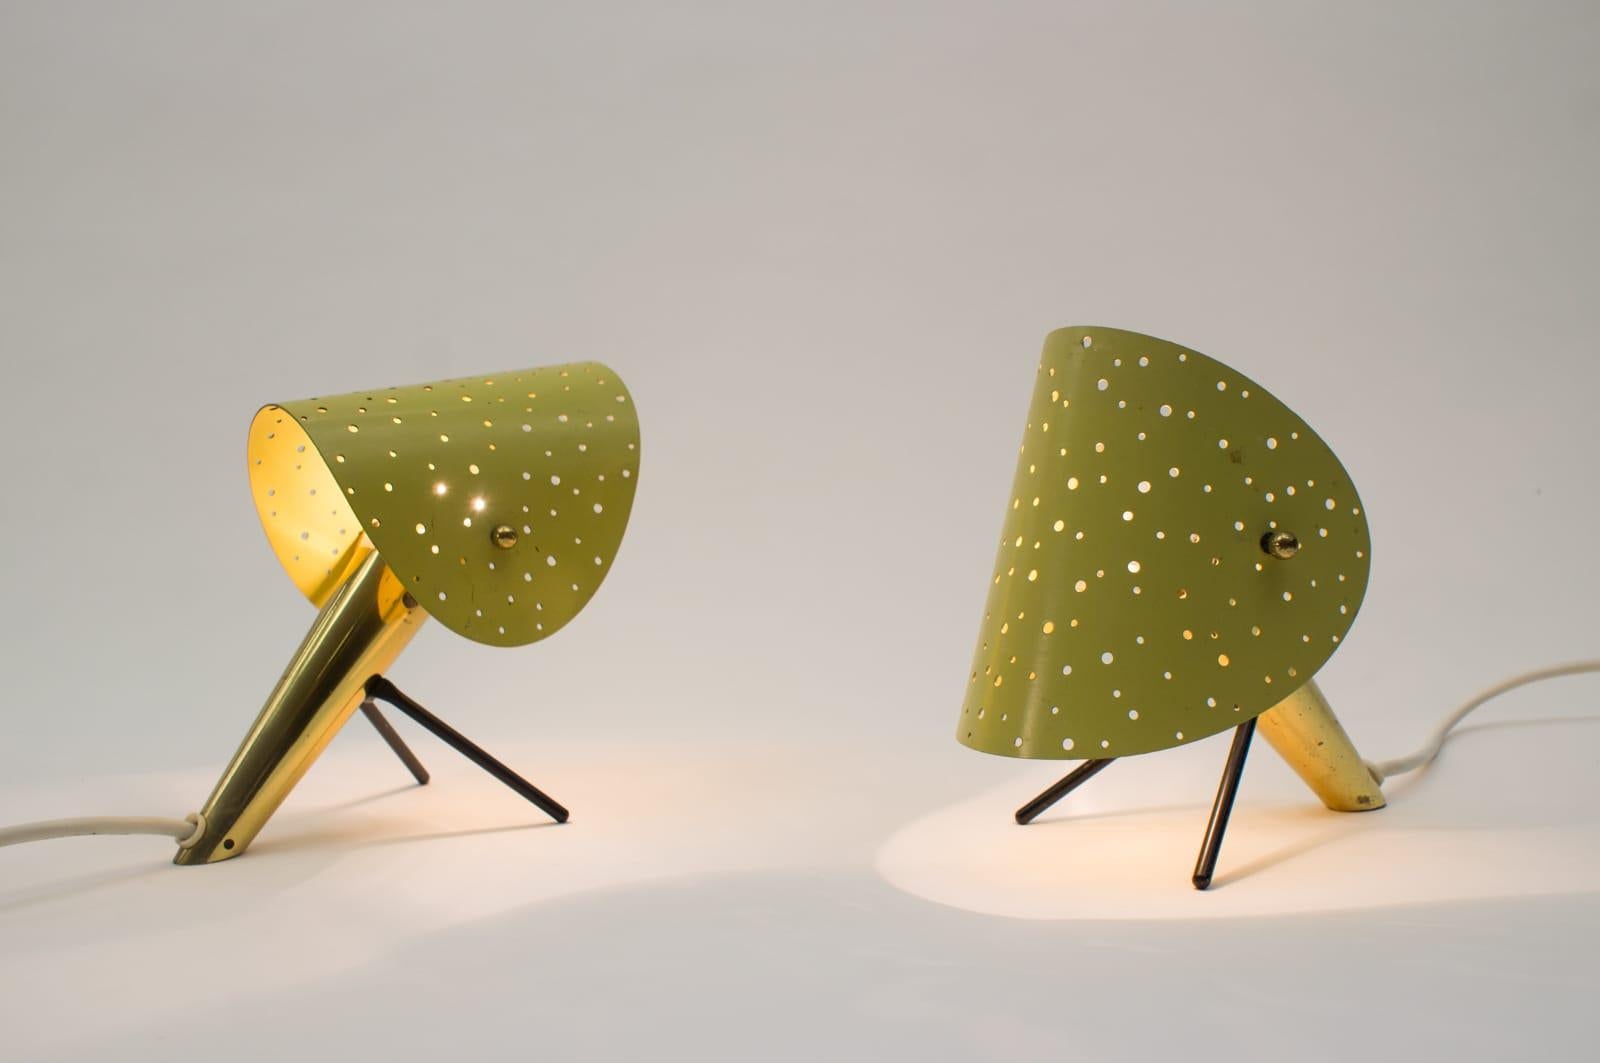 Dieses Paar Tisch- oder Wandleuchten wurde von Ernest Igl entworfen und von Hillebrand in Deutschland hergestellt. Sie bestehen aus lackierten Metallkörpern mit V-förmigen, lackierten Metallbeinen und lackierten Metallschirmen mit durchbrochenen